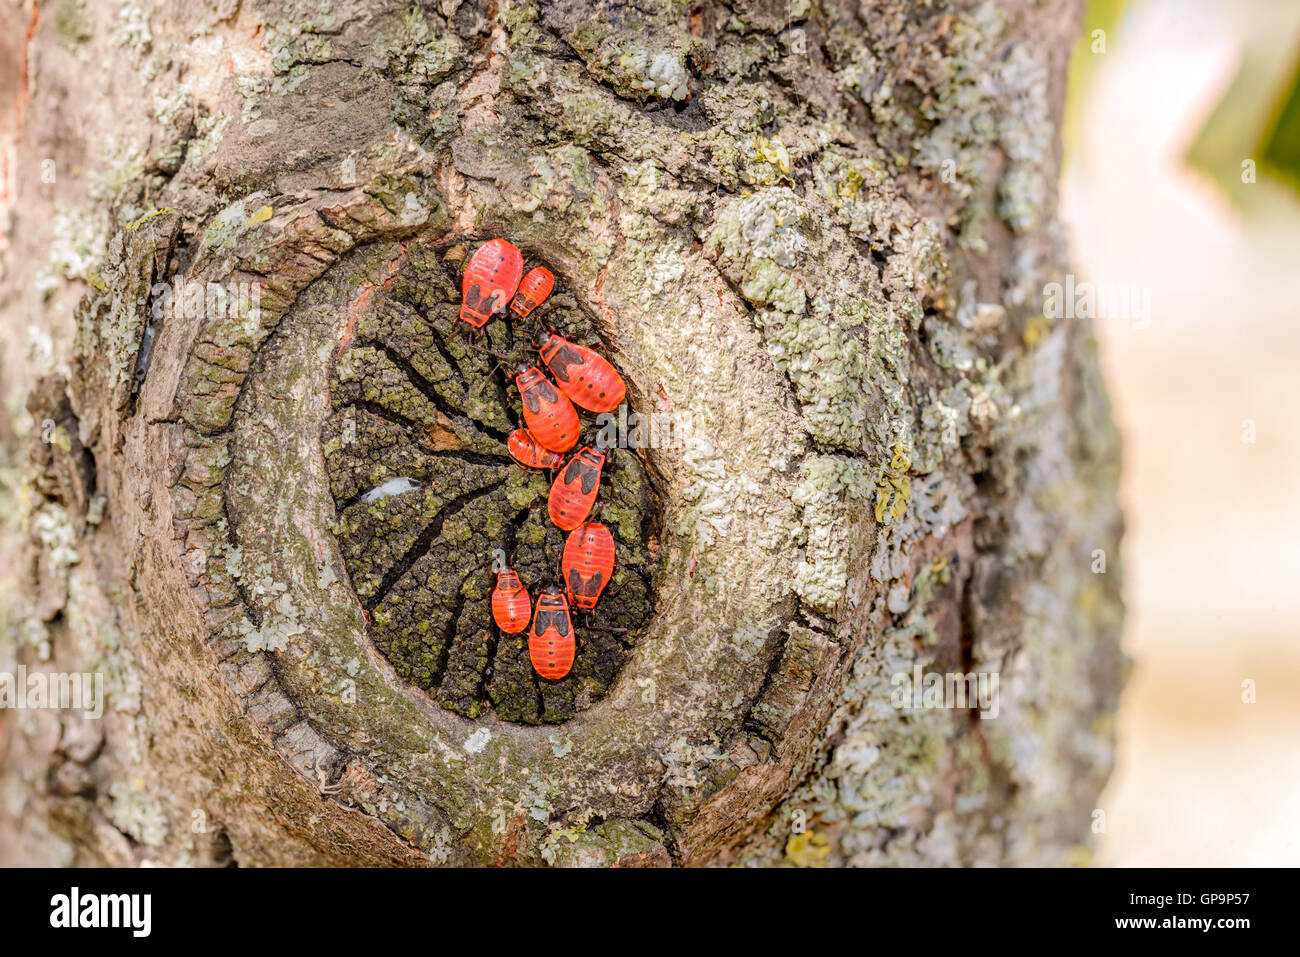 Colonie de noir et rouge Firebug ou Pyrrhocoris apterus, les adultes et les nymphes, sur un tronc d'arbre Banque D'Images